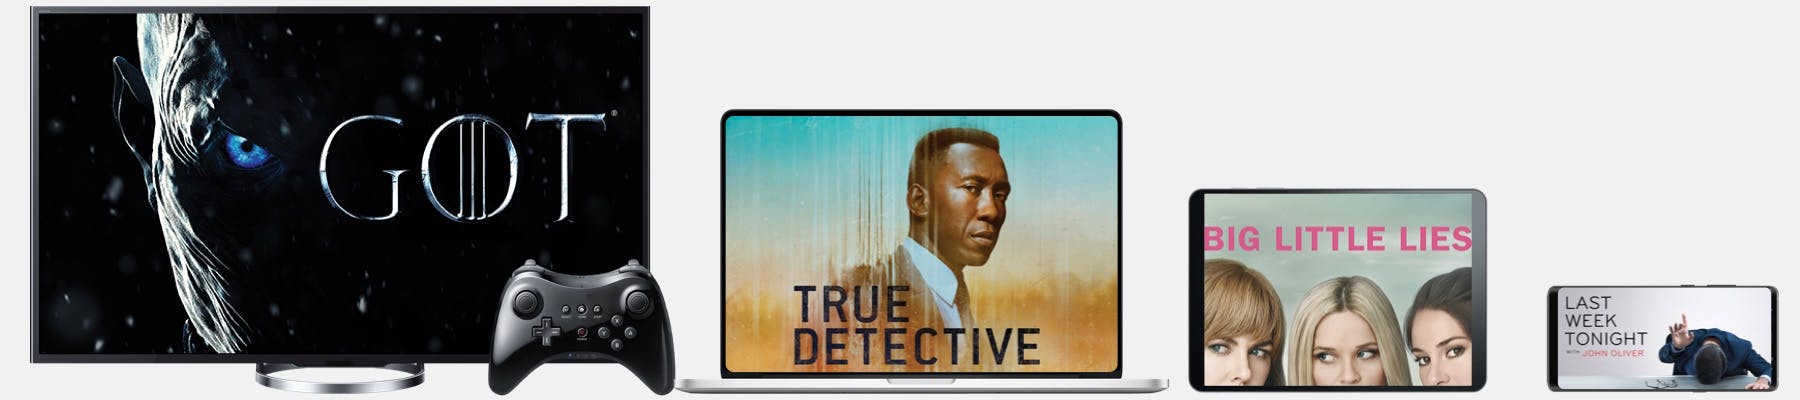 watch true detective online